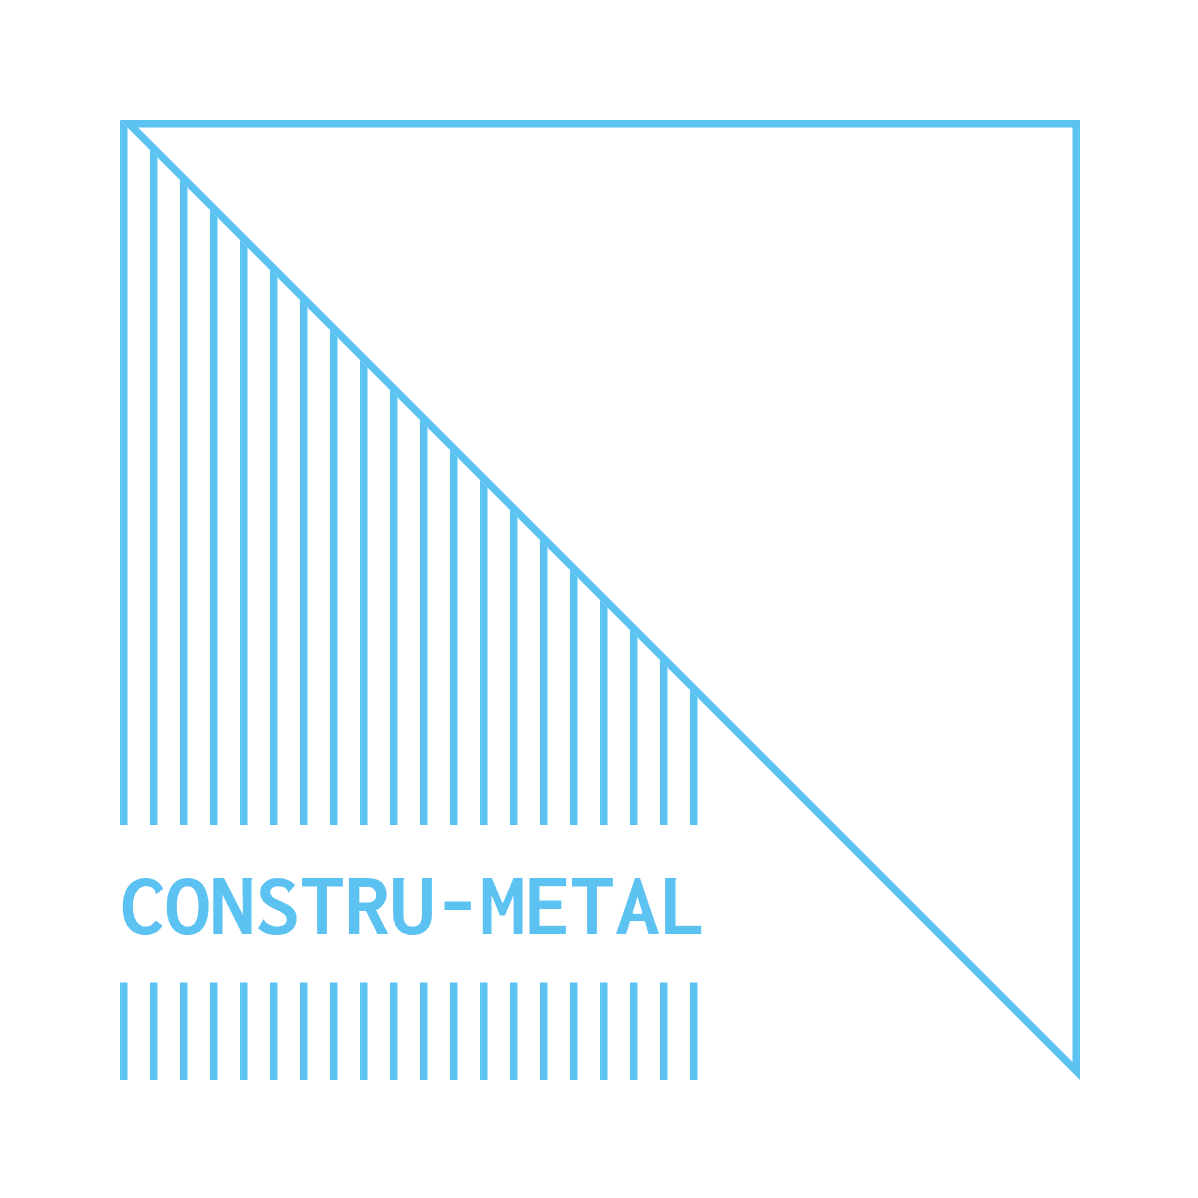 Constru-metal